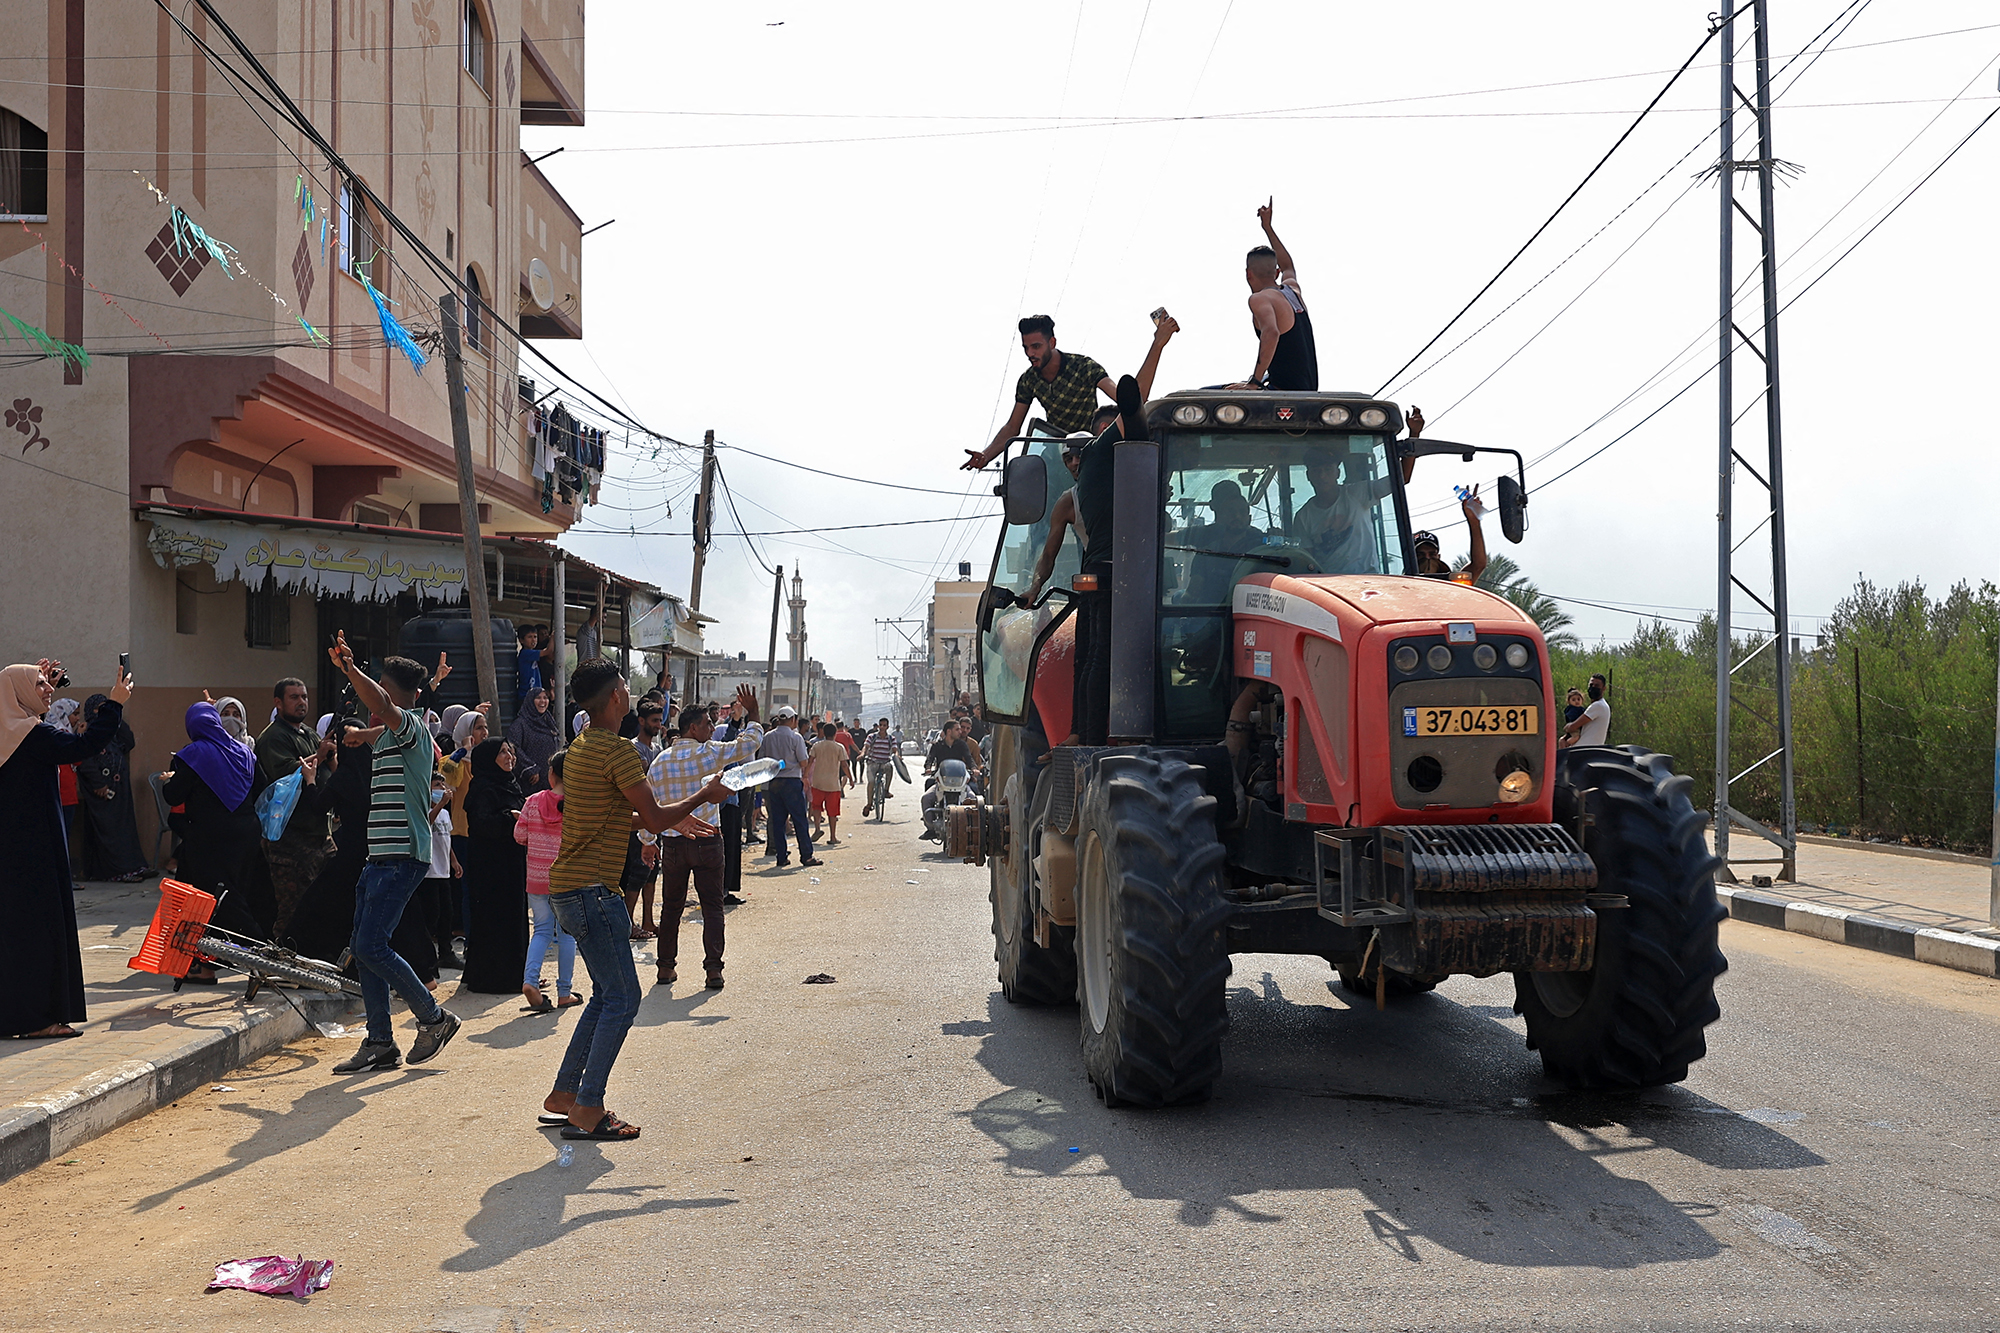 Palästinenser auf beschlagnahmtem israelischen Traktor